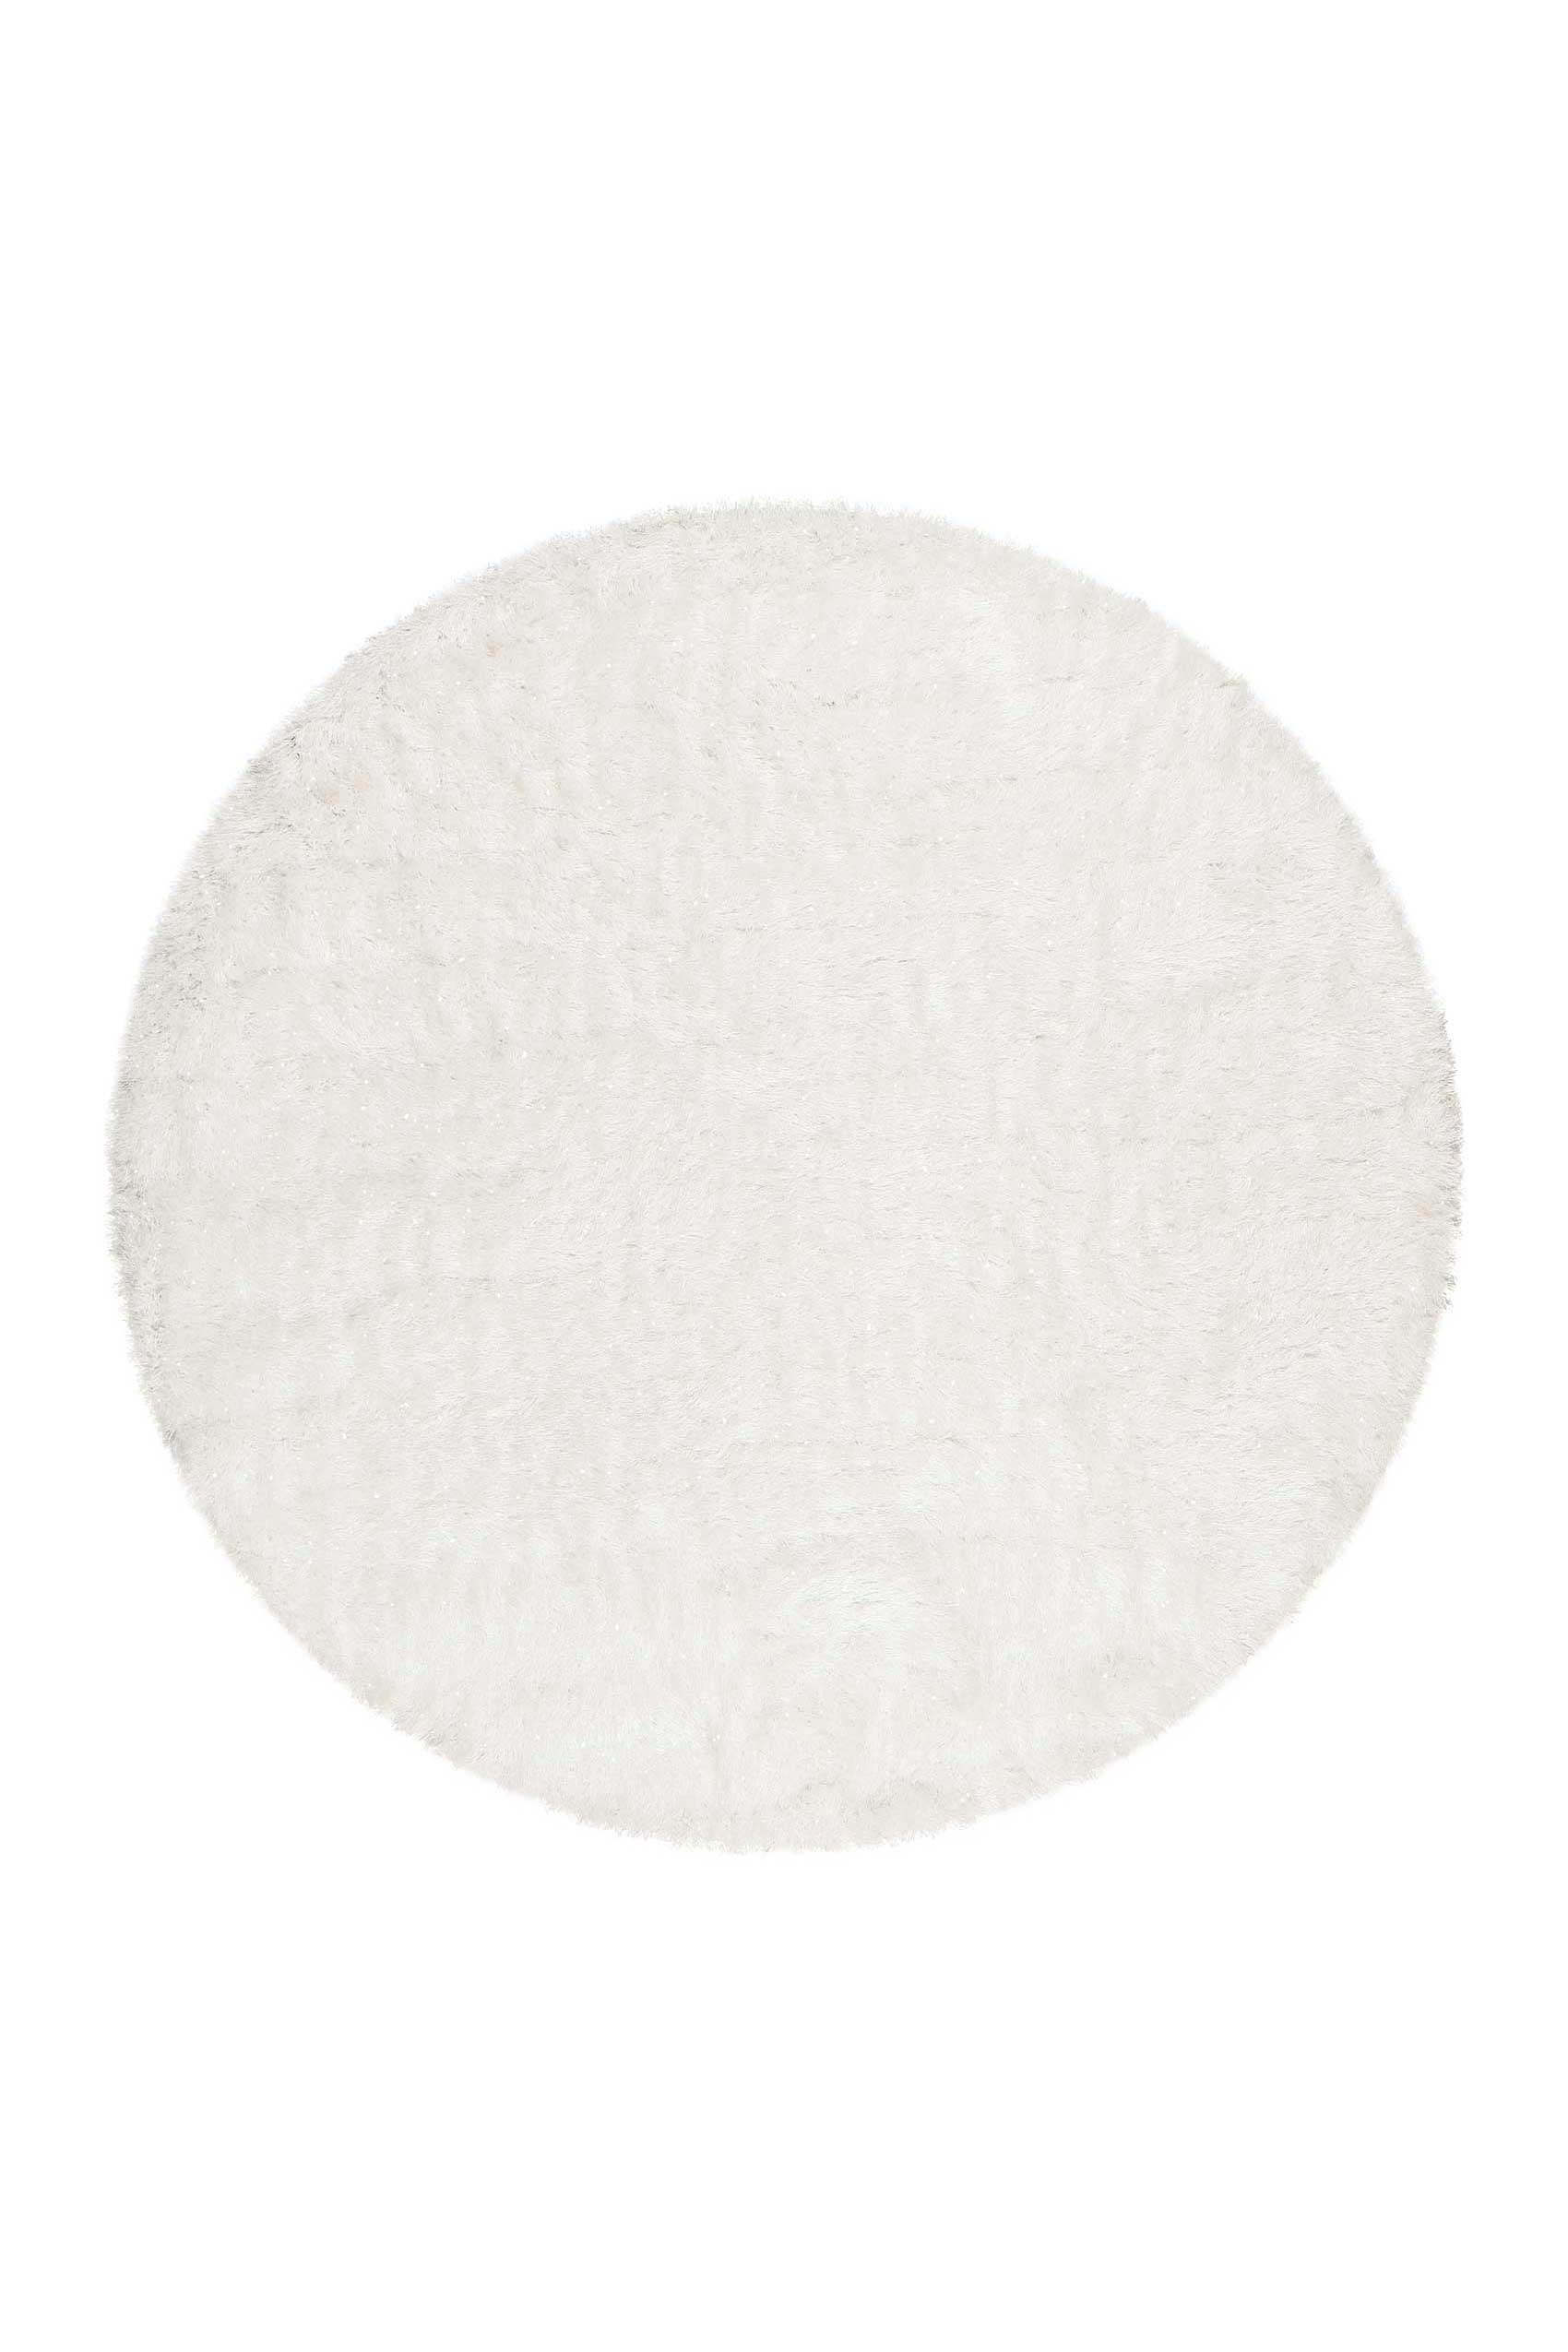 Teppich Rund Creme Weiß glänzend Hochflor » Shiny Touch « WECONhome - Ansicht 1